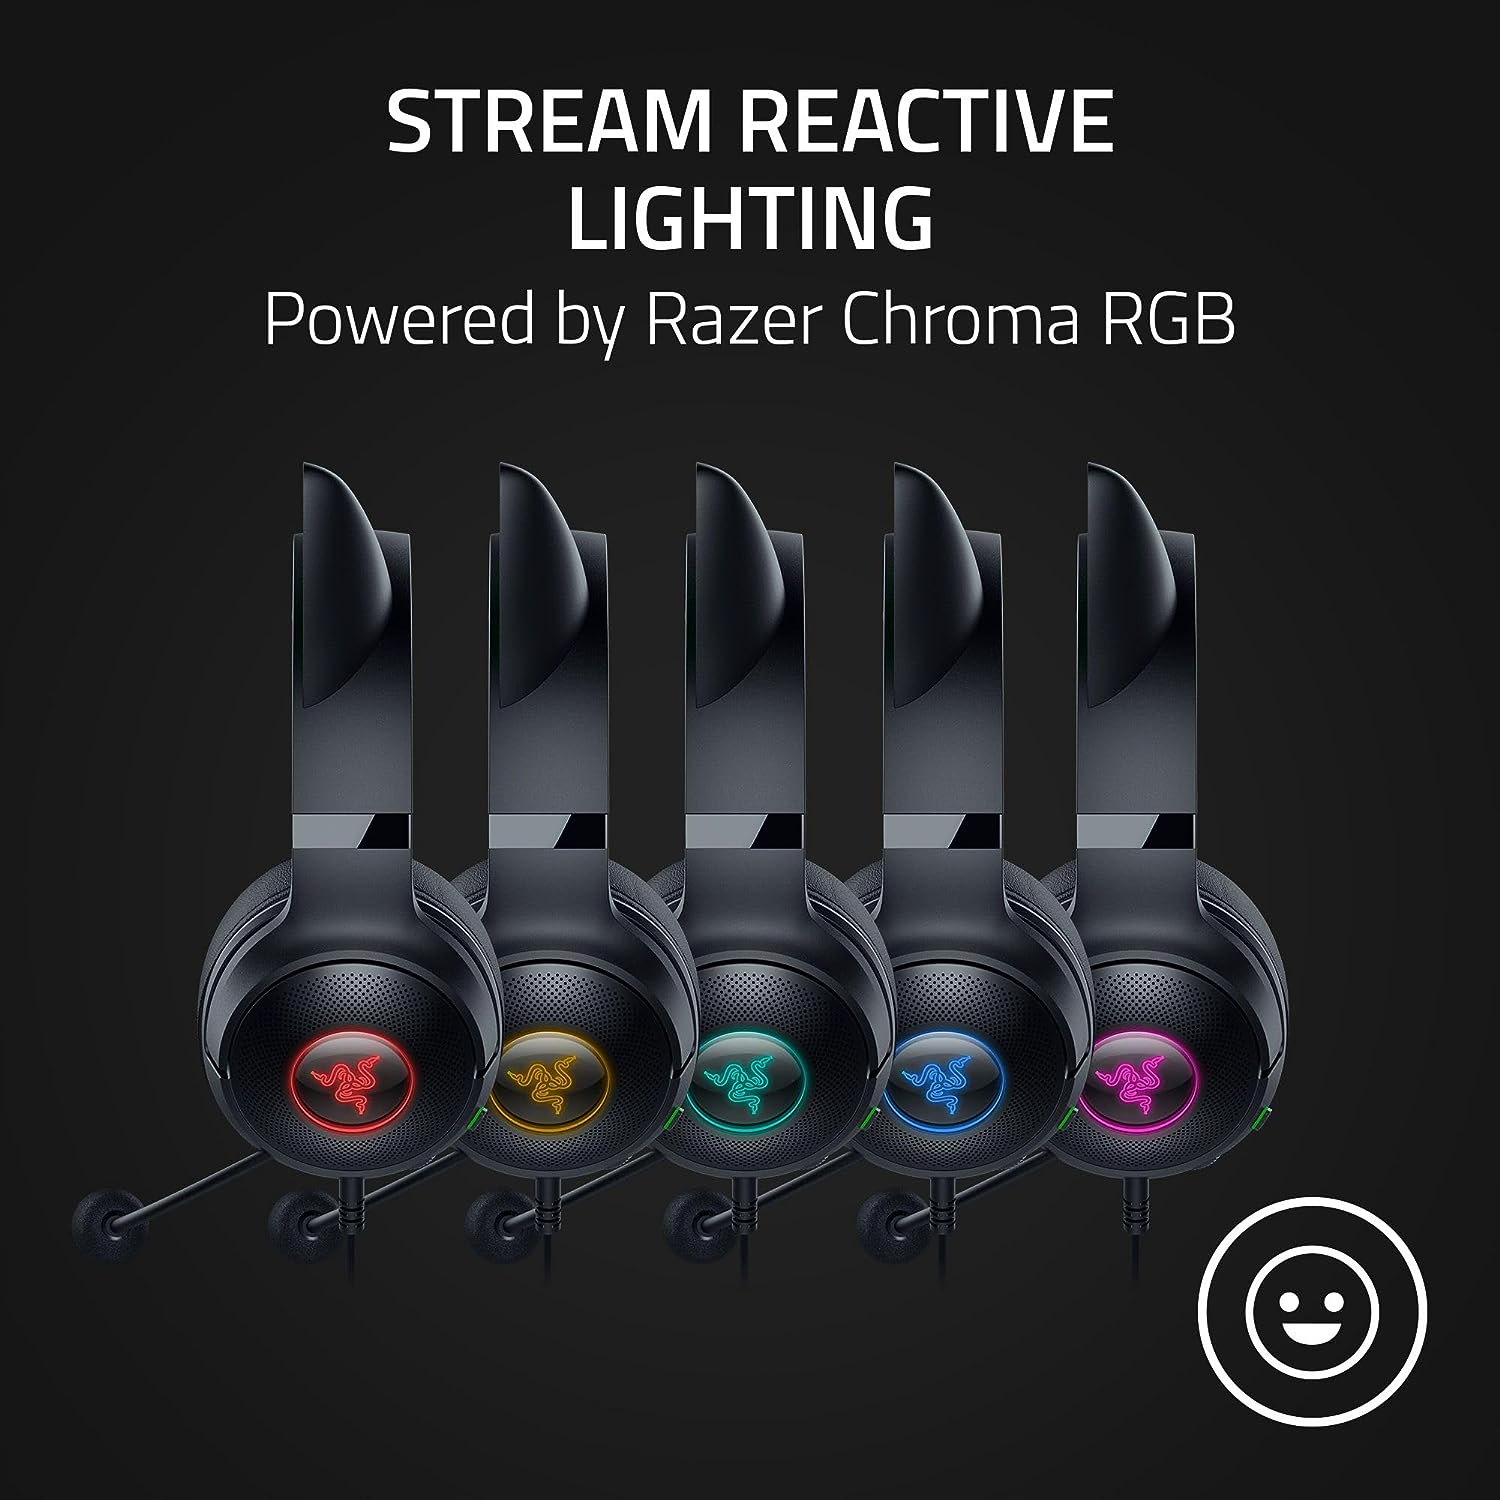 Tai nghe có dây choàng đầu Razer Kraken Kitty V2-USB Headset with RGB Kitty Ears_Mới, hàng chính hãng